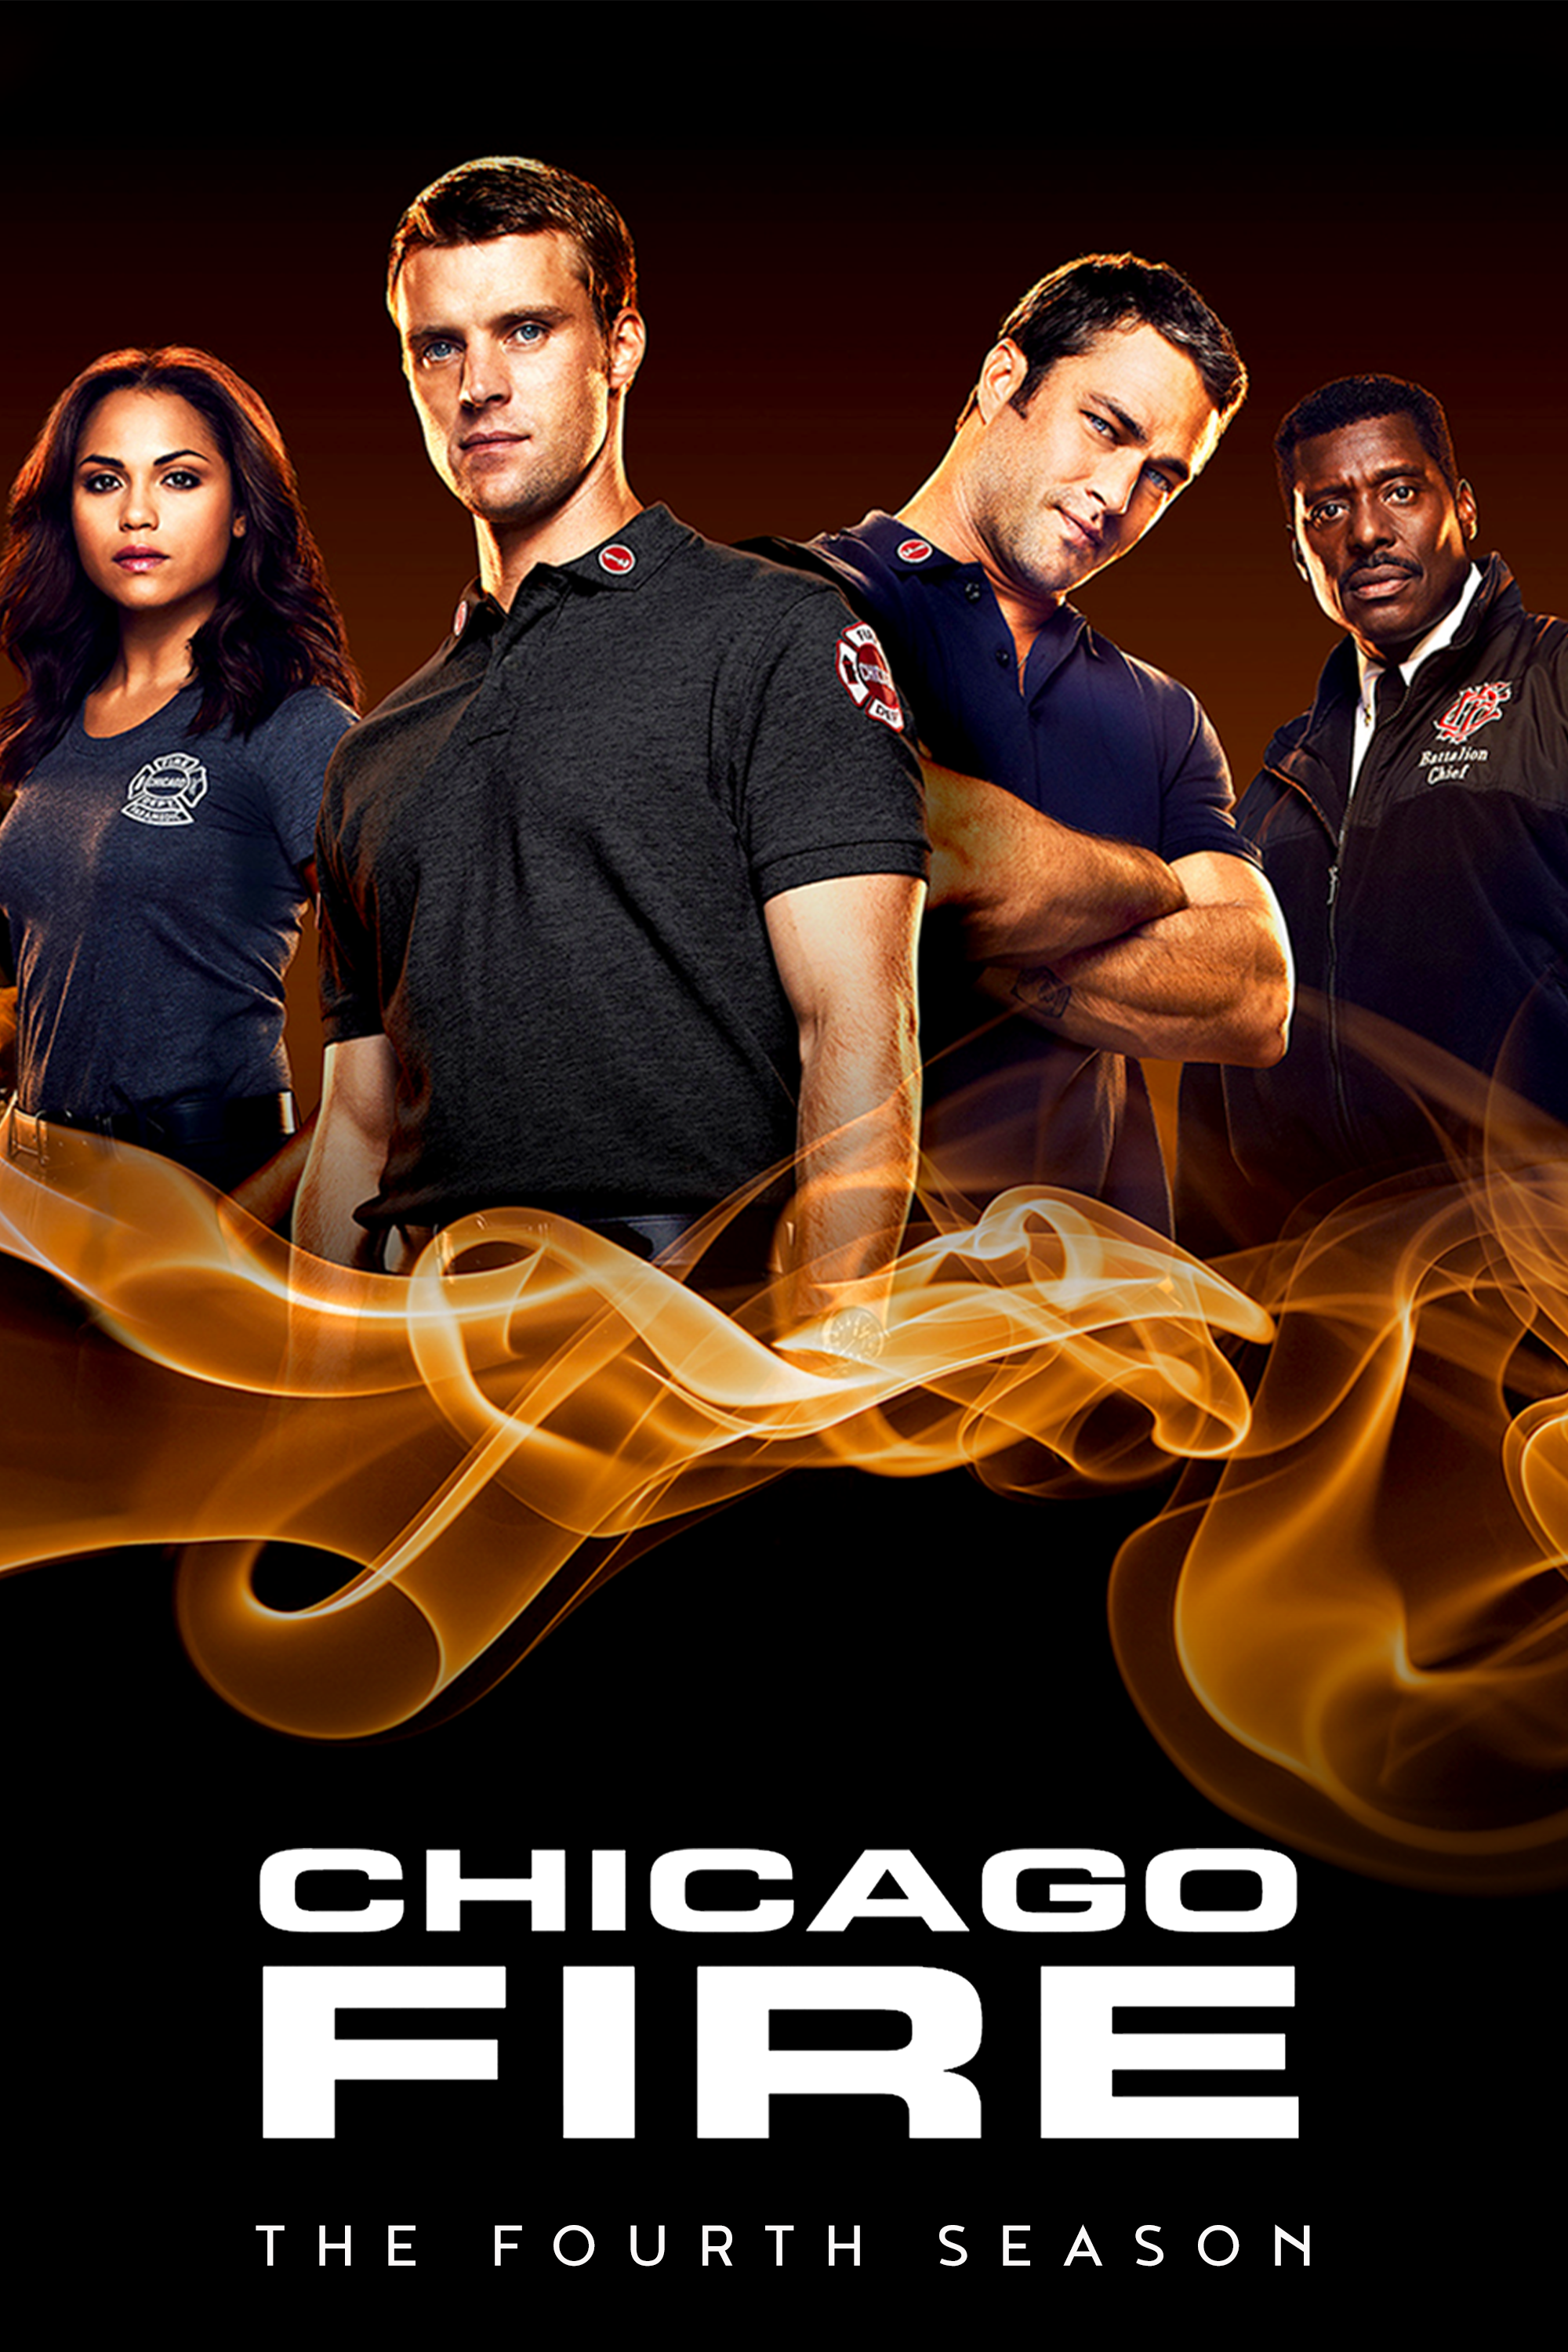 ดูหนังออนไลน์ฟรี Chicago Fire Season 4 EP.19 ชิคาโก้ ไฟร์ หน่วยดับเพลิงท้านรก ซีซั่นที่ 4 ตอนที่ 19